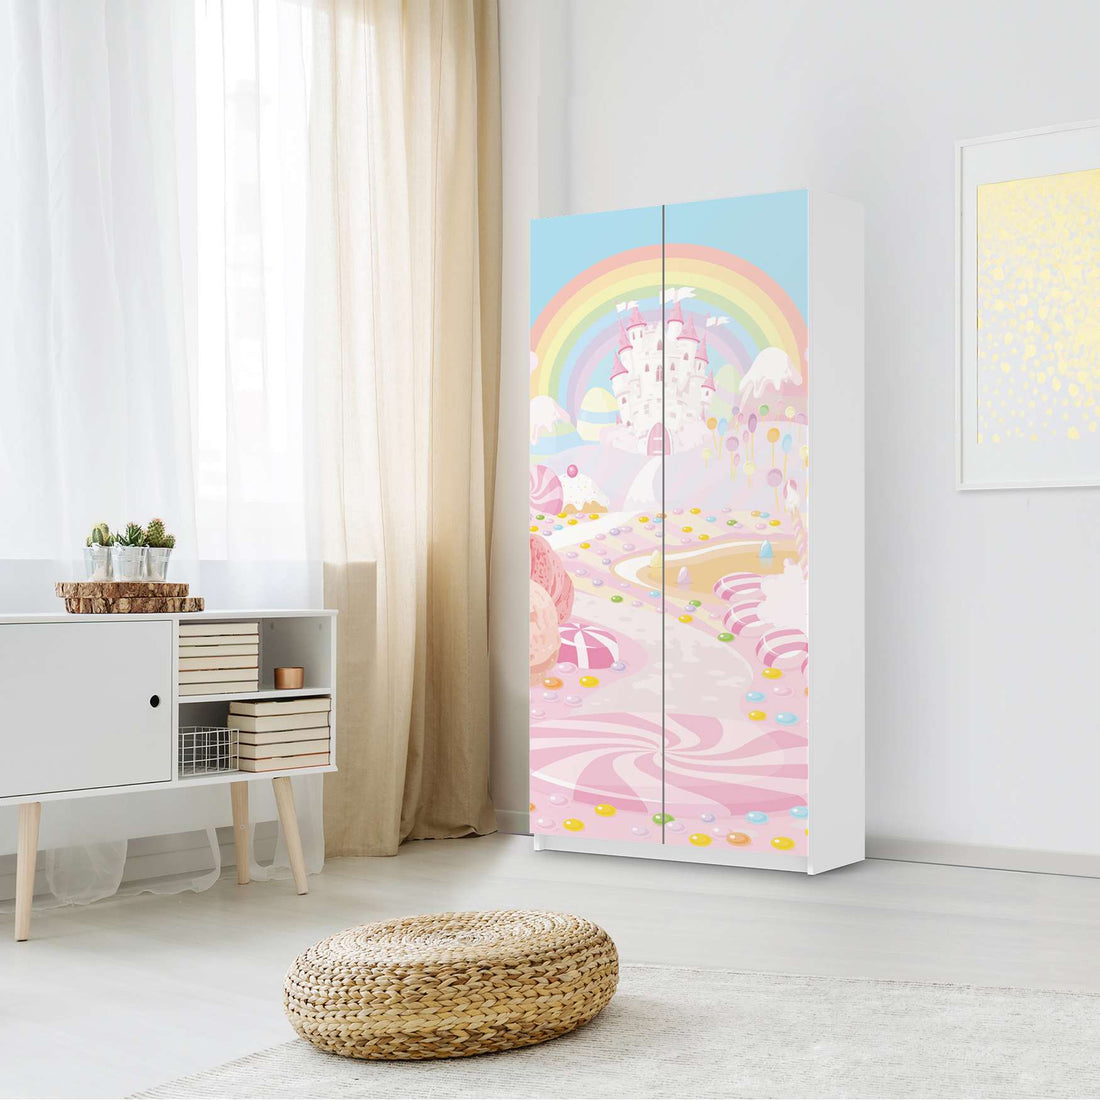 Klebefolie für Möbel Candyland - IKEA Pax Schrank 201 cm Höhe - 2 Türen - Kinderzimmer